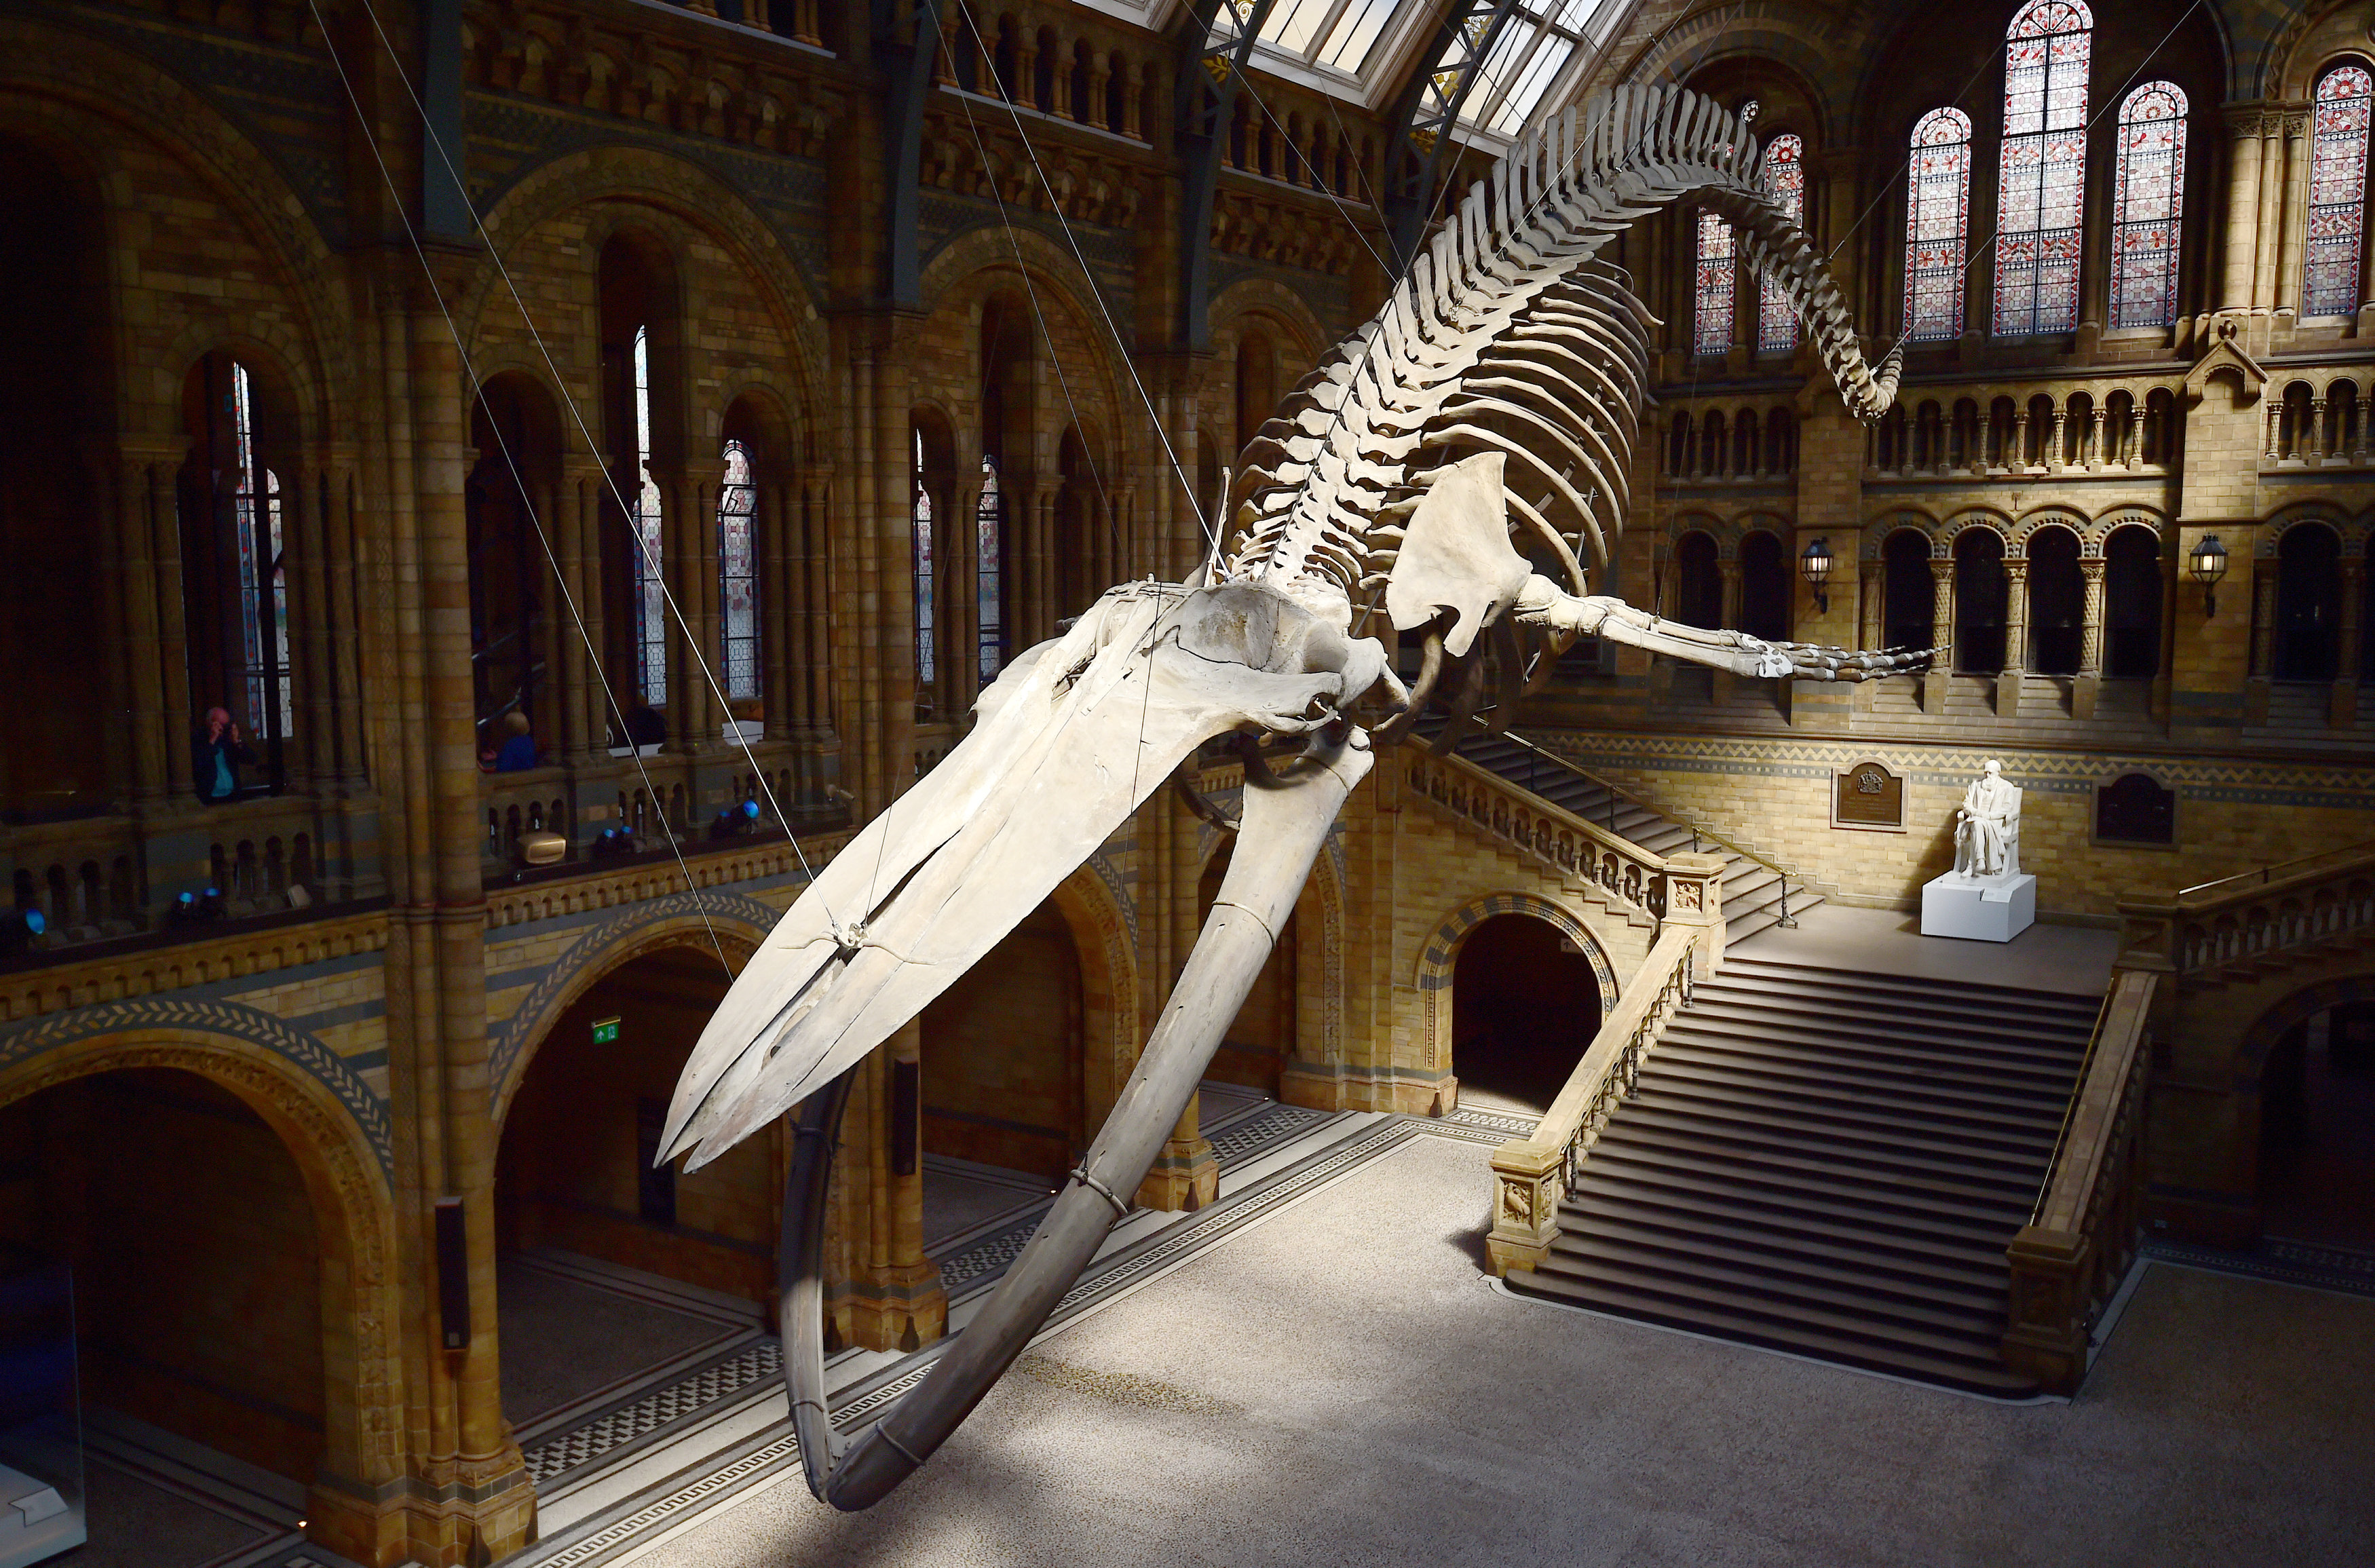 بالصور متحف التاريخ الطبيعى فى لندن يعرض أول هيكل عظمى للحوت الأزرق العملاق اليوم السابع